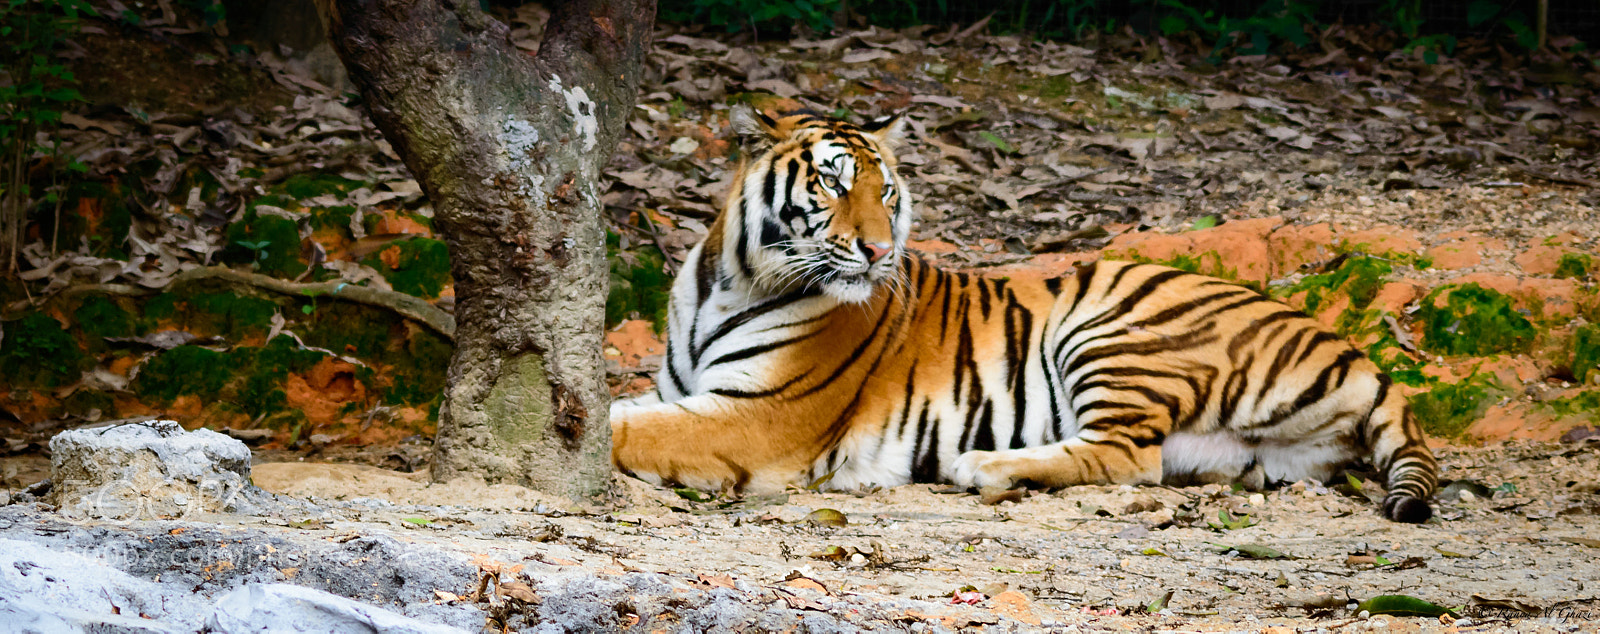 Nikon D3200 sample photo. Bengal tiger photography